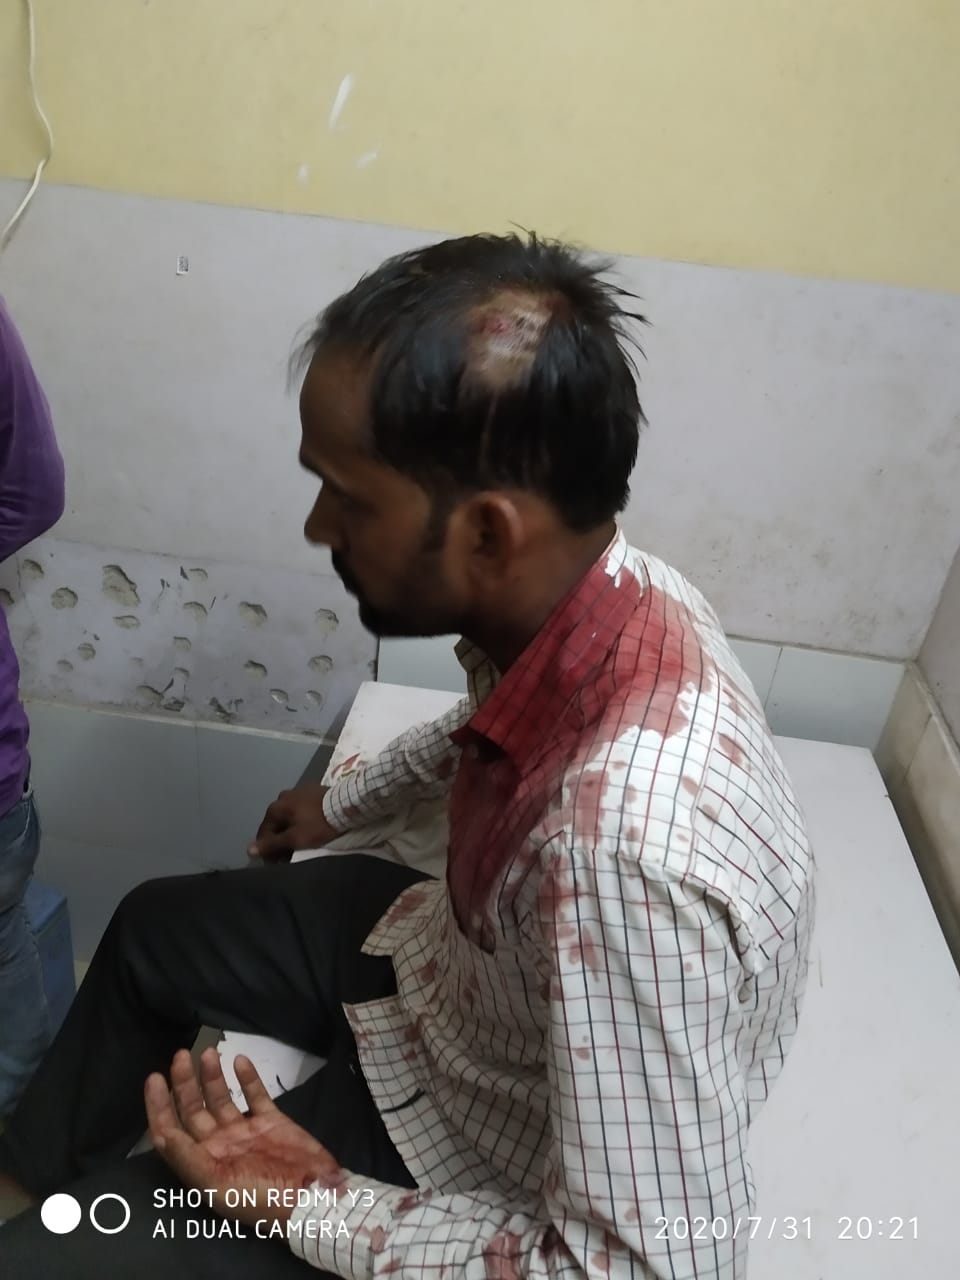 लूट में असफल बदमाशों ने तमंचे के बट से मारकर टाईनी संचालक को किया घायल --ग्रामीणों ने दो बदमाशों को दबोचा